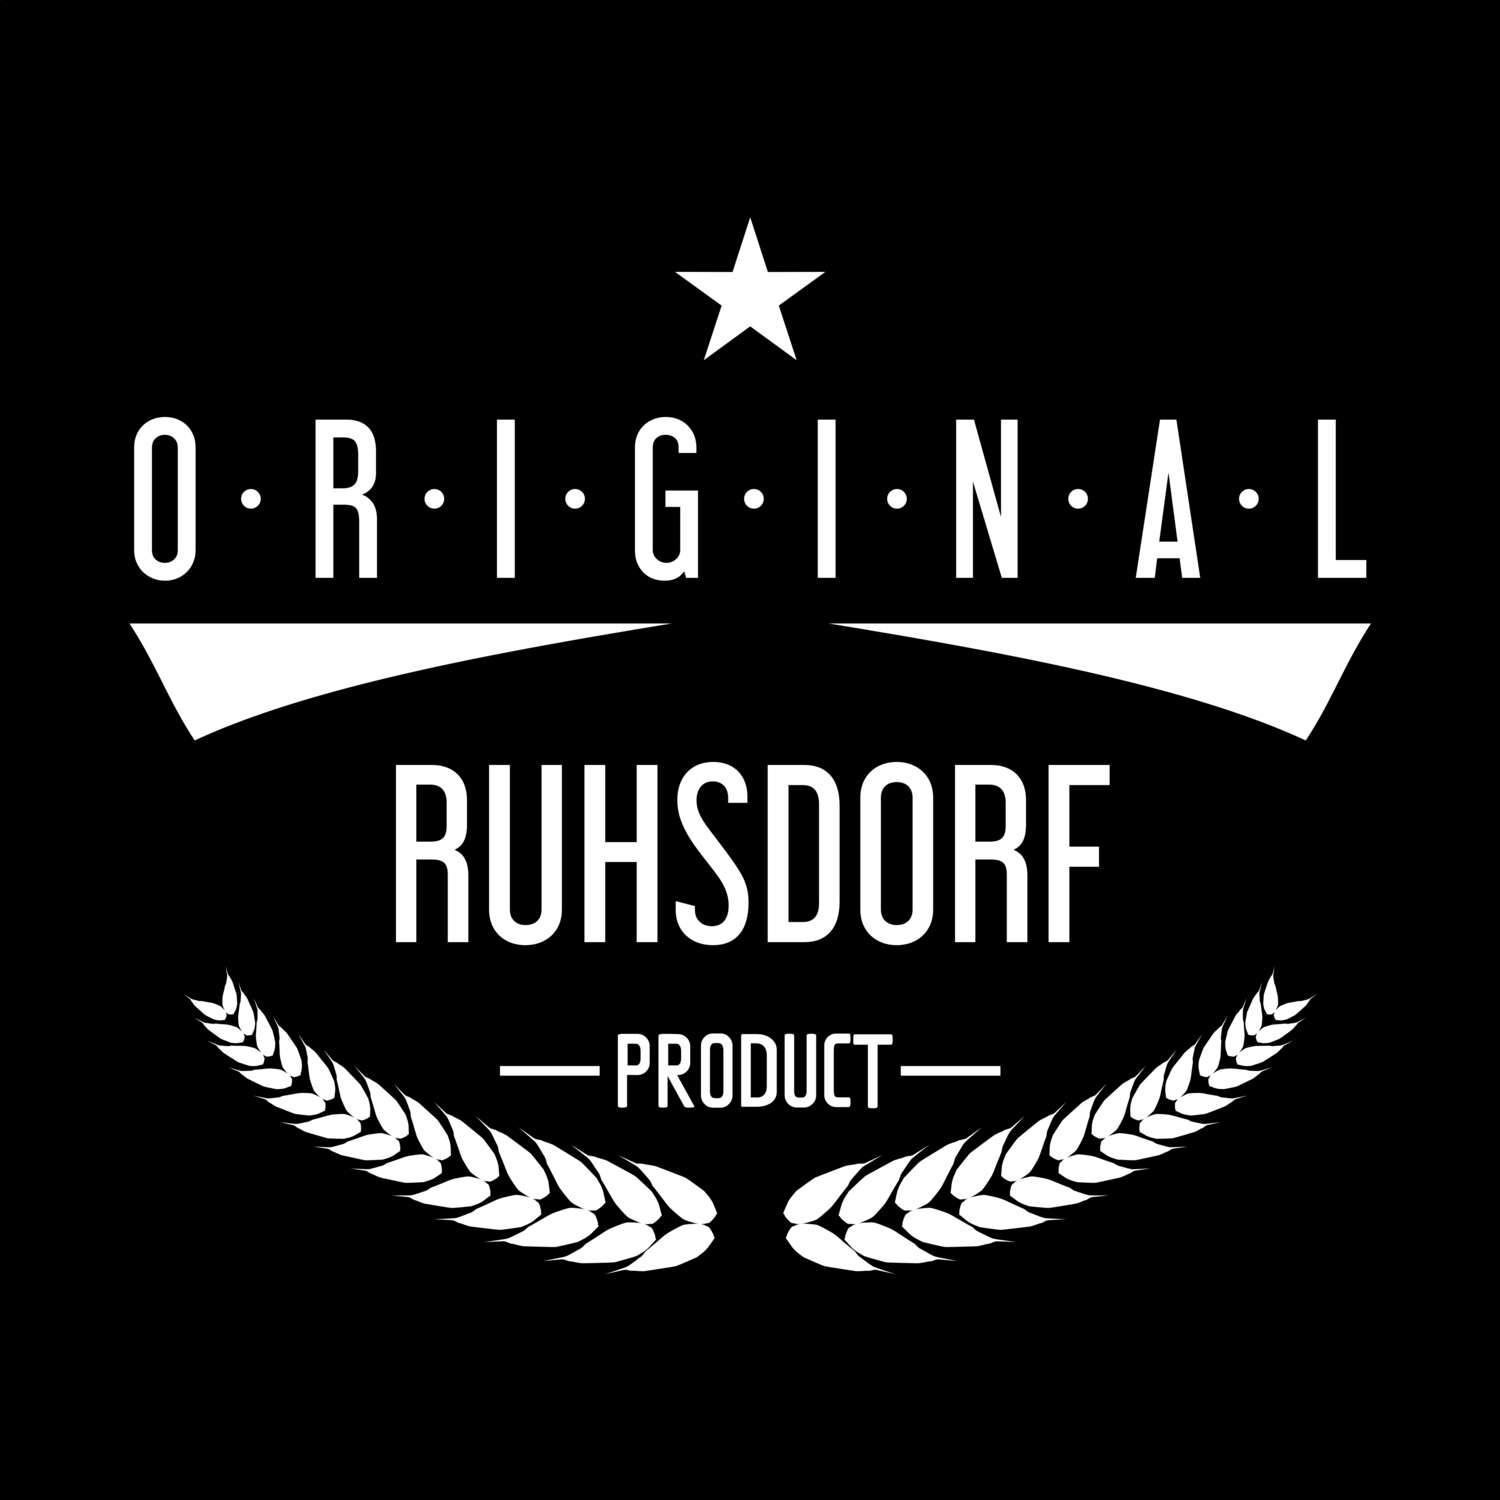 Ruhsdorf T-Shirt »Original Product«